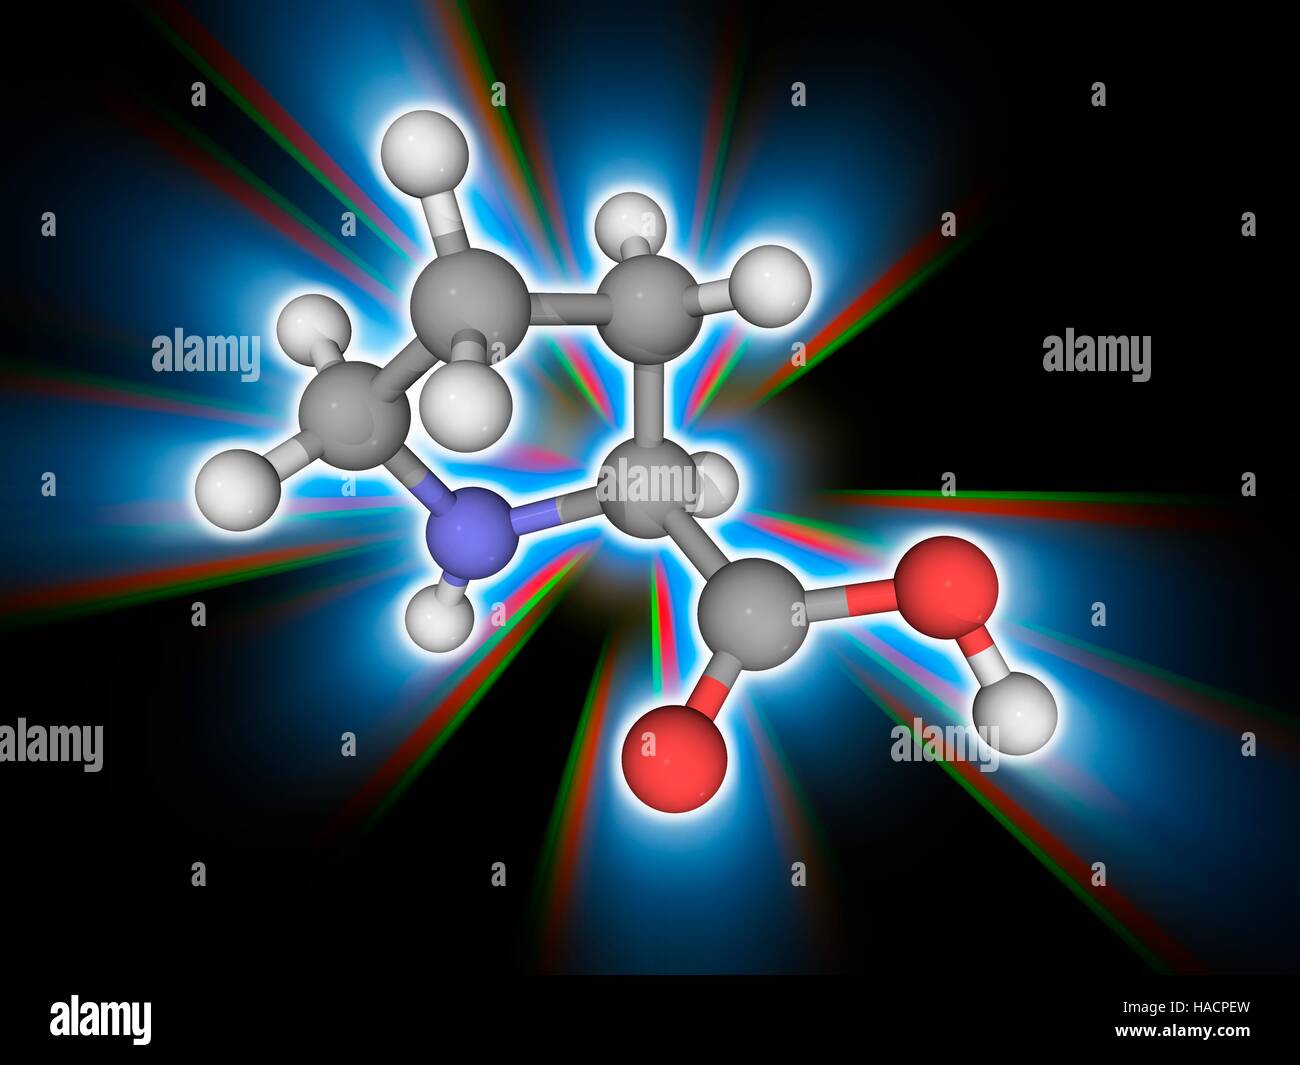 Prolin. Molekulares Modell des Alpha-amino Acid Proline unwesentliche (C5. H9. N.O2), eines der 20 DNA-kodierten Aminosäuren. Atome als Kugeln dargestellt werden und sind farblich gekennzeichnet: Kohlenstoff (grau), Wasserstoff (weiß), Stickstoff (blau) und Sauerstoff (rot). Abbildung. Stockfoto